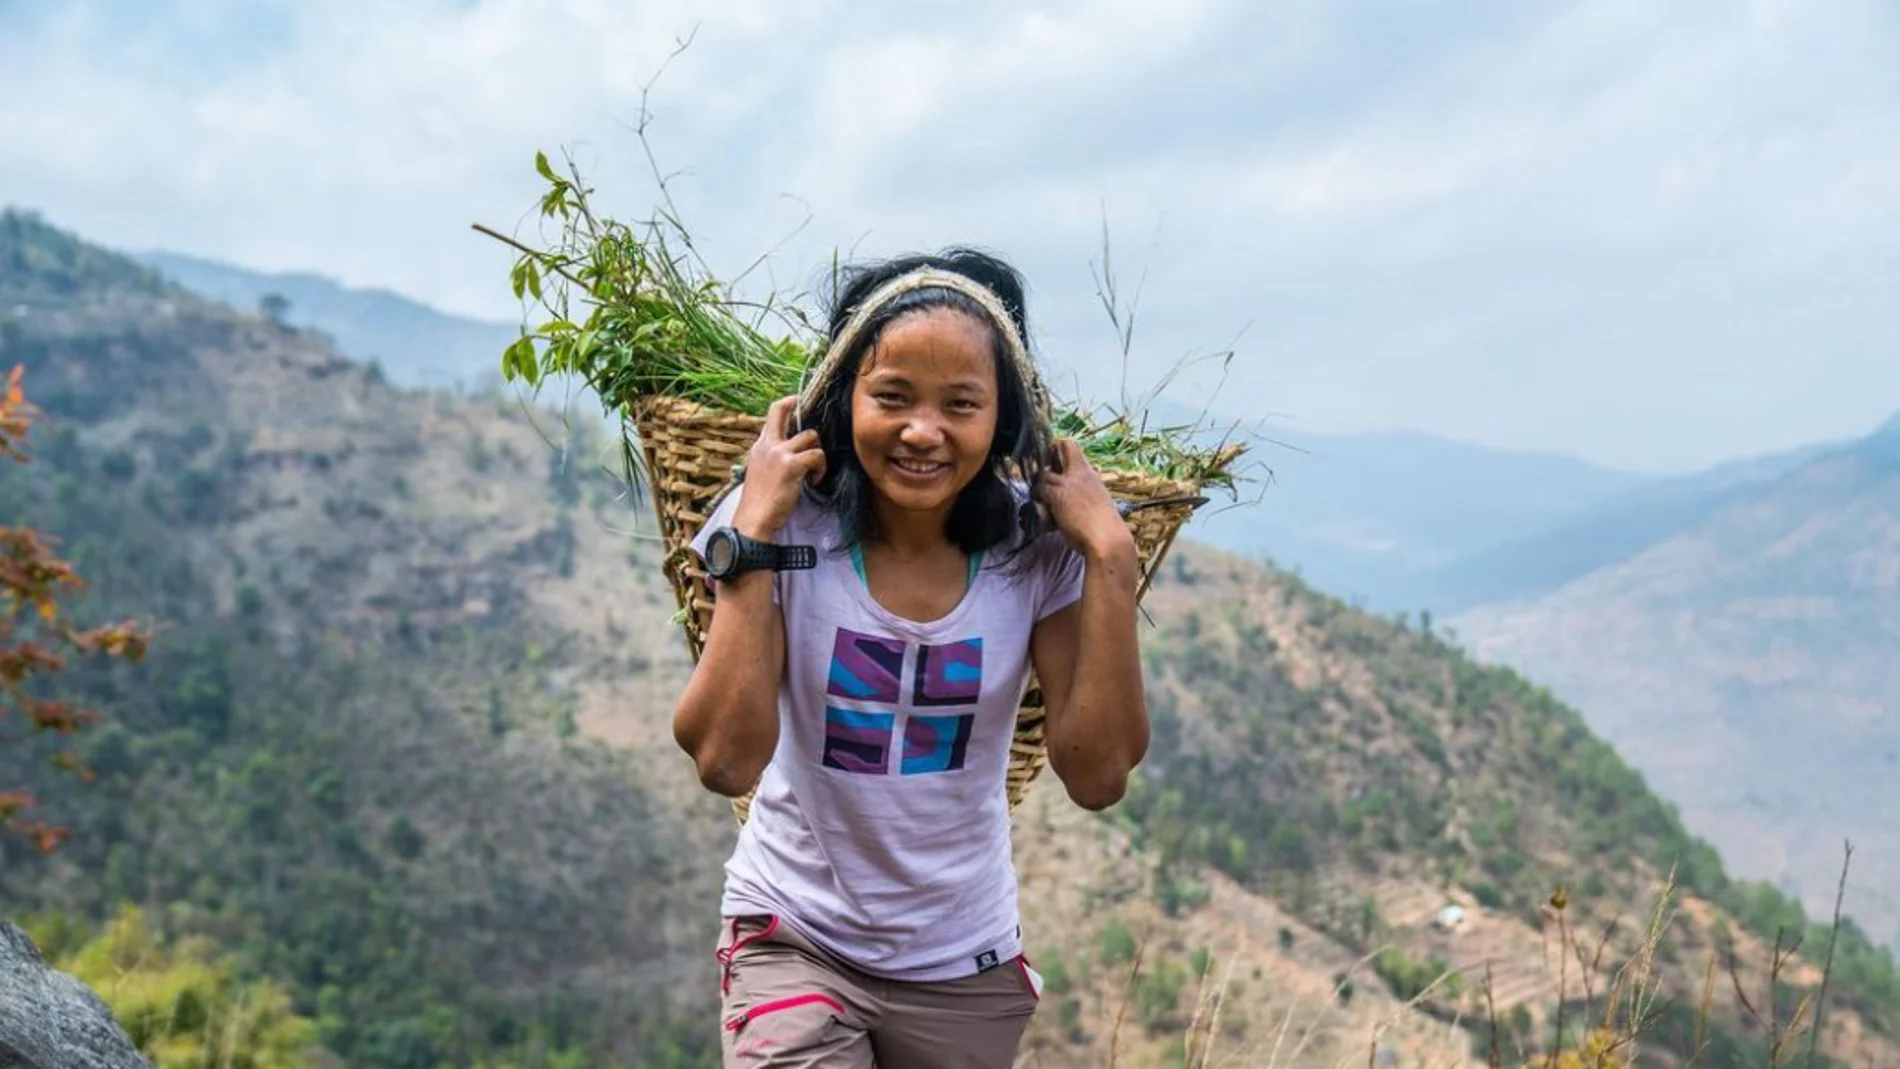 La increíble historia de la nepalí Mira Rai, de niña soldado a estrella del ultramaratón